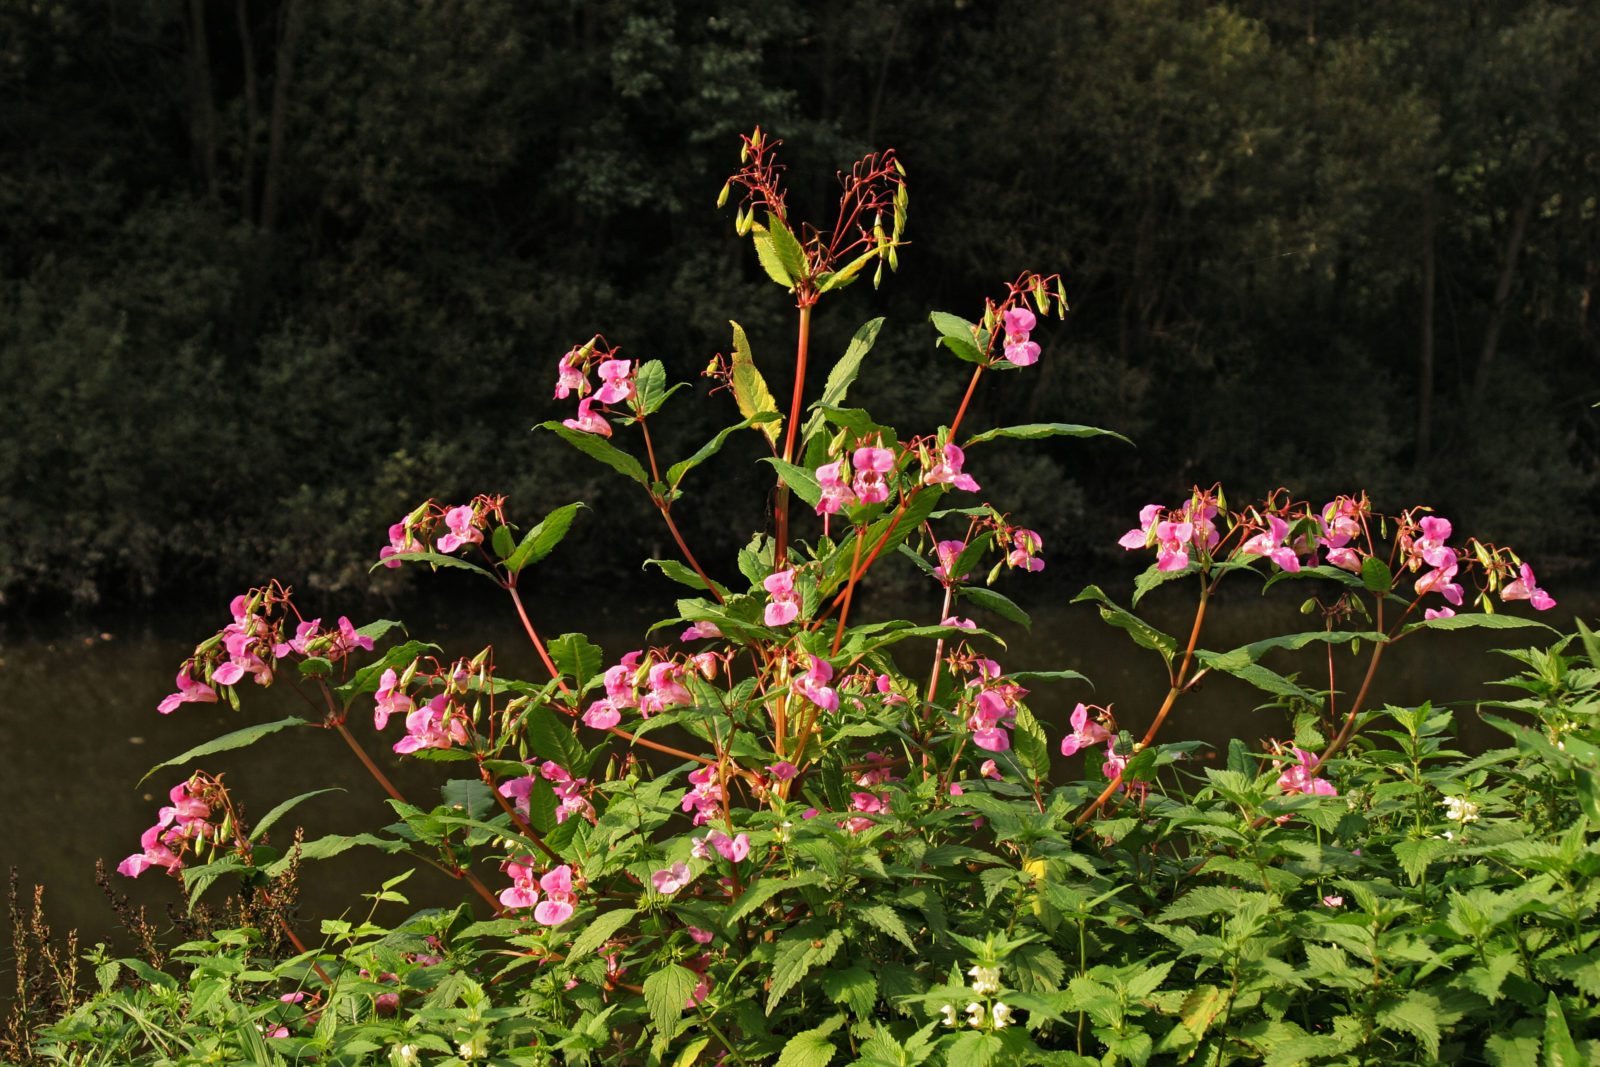 Himalayan Balsam, invasive plant species